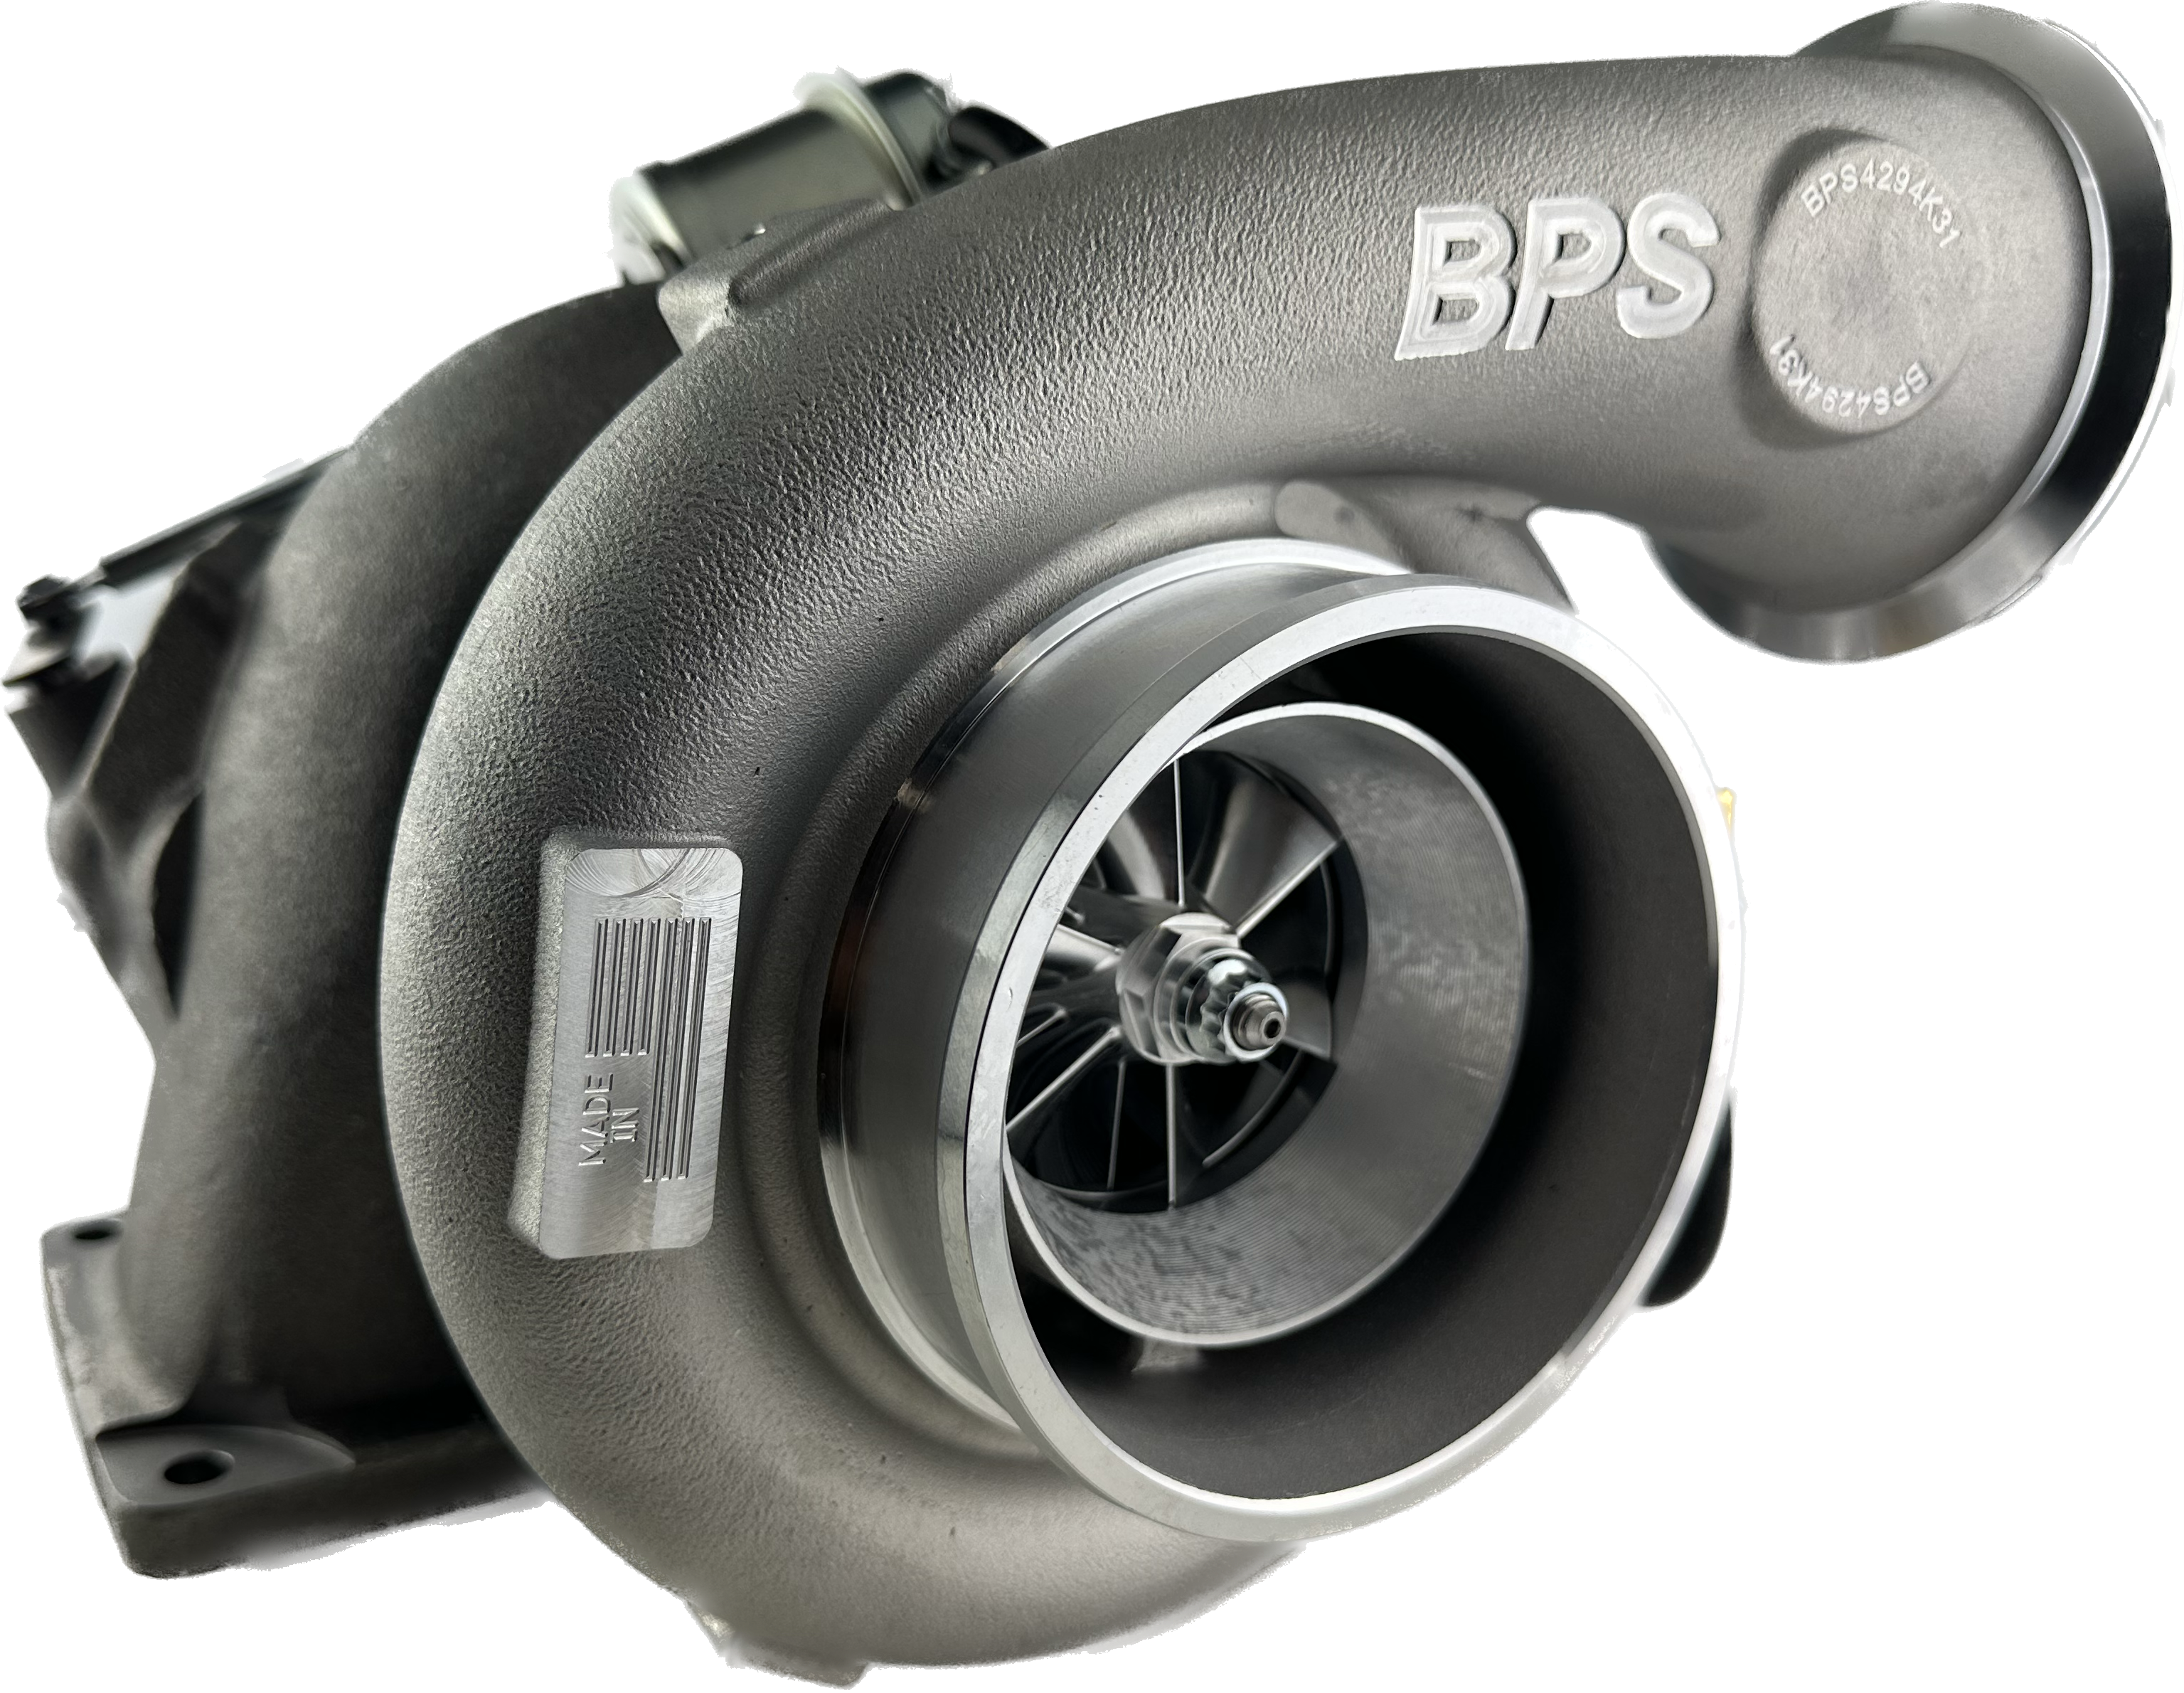 NEW * BPSGT4294K31BW DETROIT K31 Turbocharger - BILLET CAE 72mm